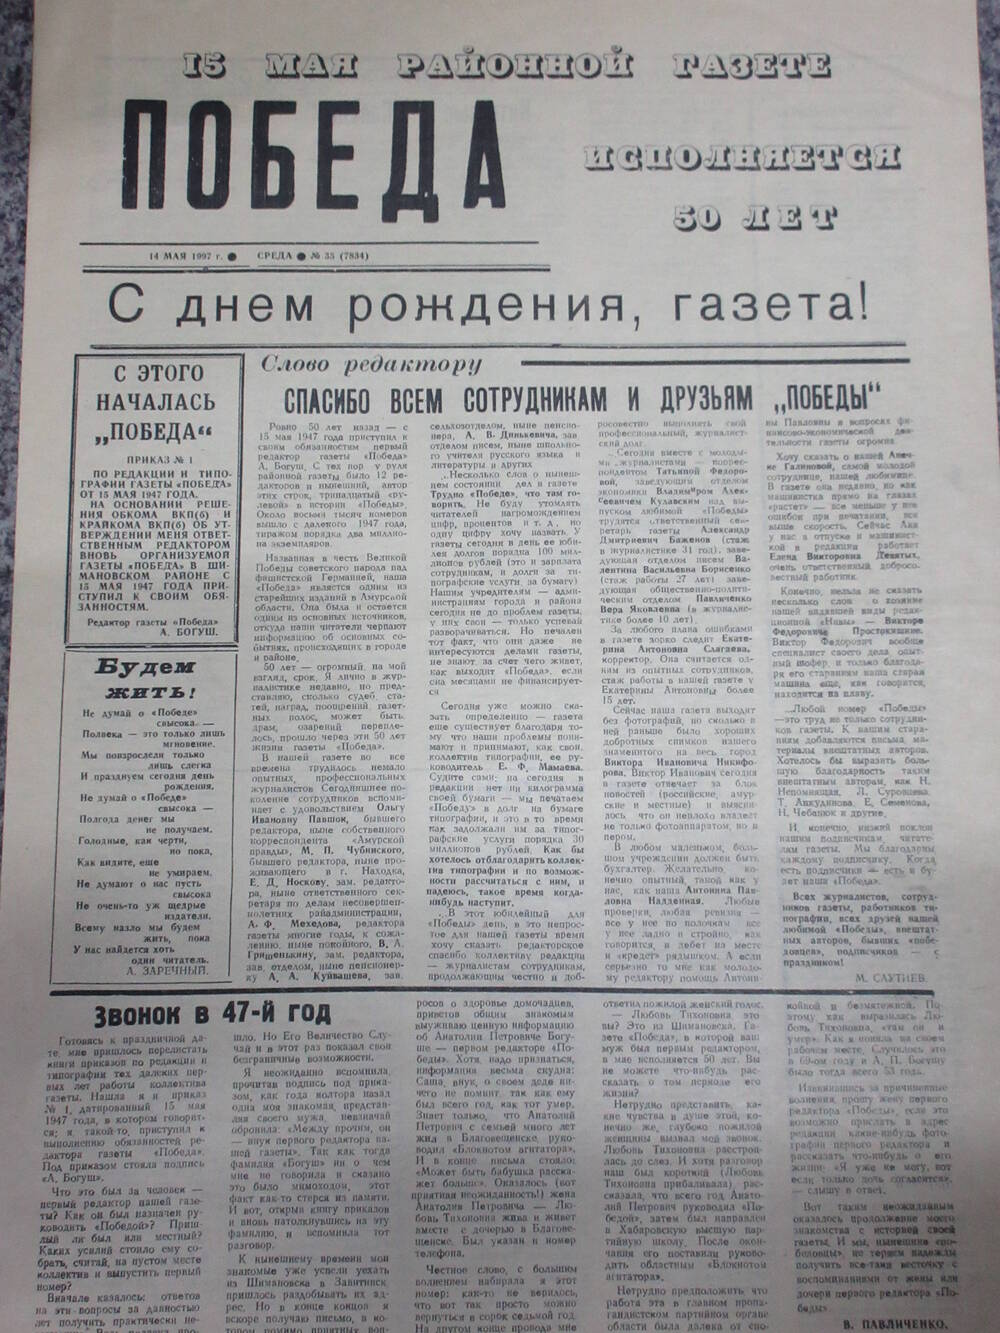 Газета Победа г. Шимановска, отпечатана к 50-летию со дня рождения газеты